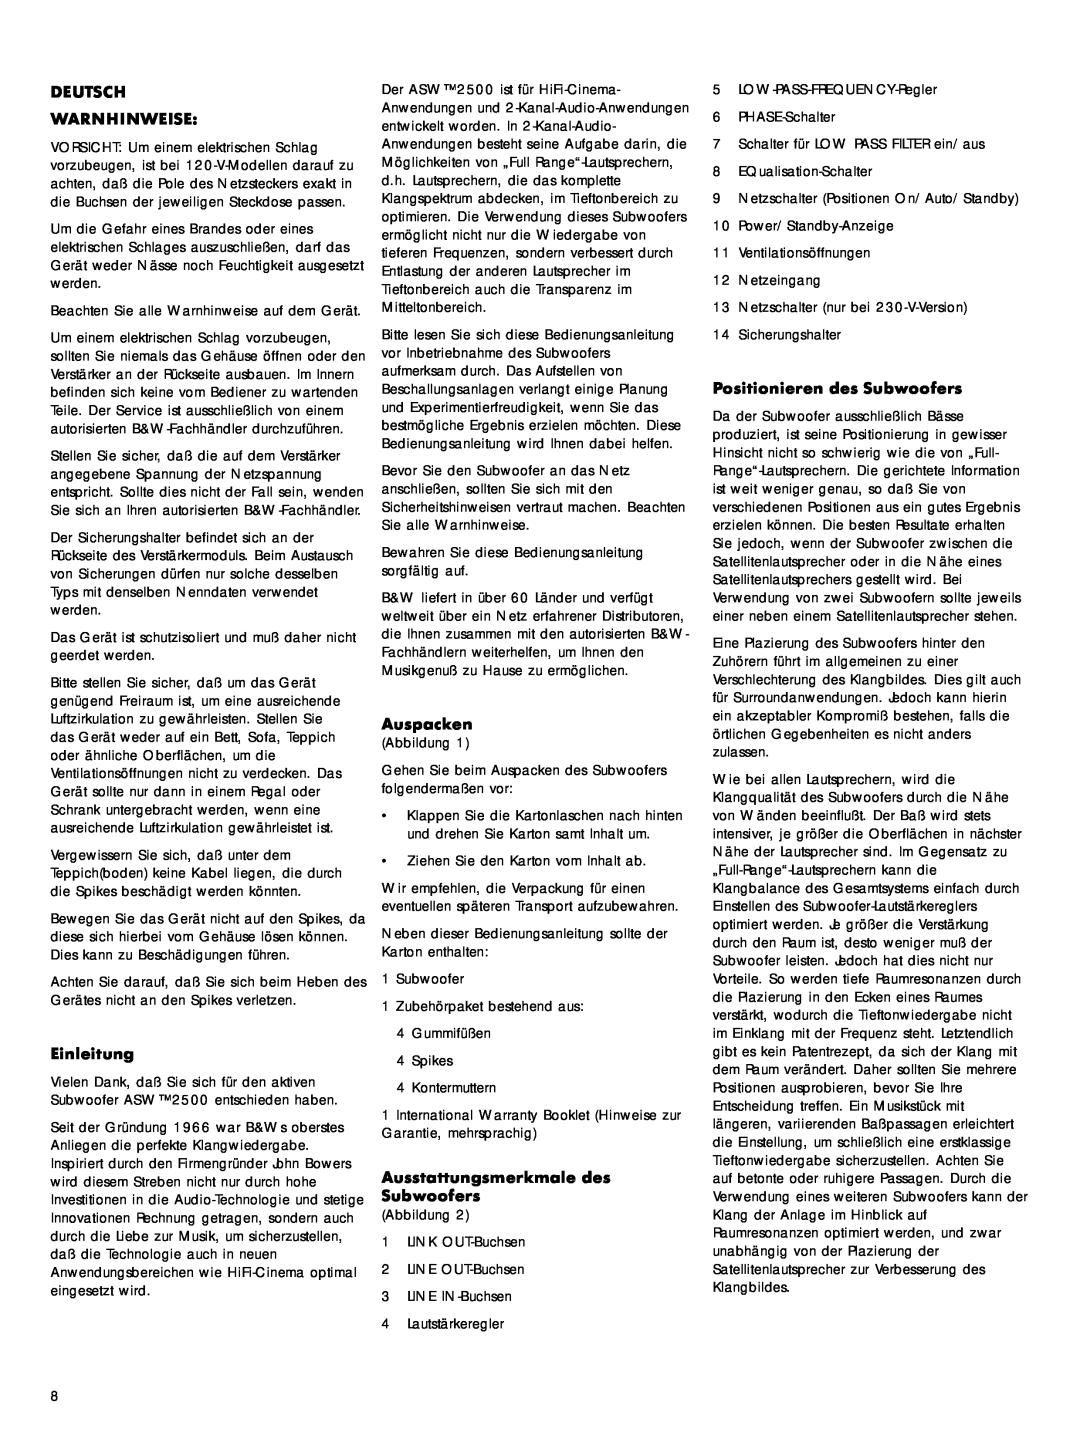 Bowers & Wilkins ASW 2500 owner manual Deutsch Warnhinweise, Einleitung, Auspacken, Ausstattungsmerkmale des Subwoofers 